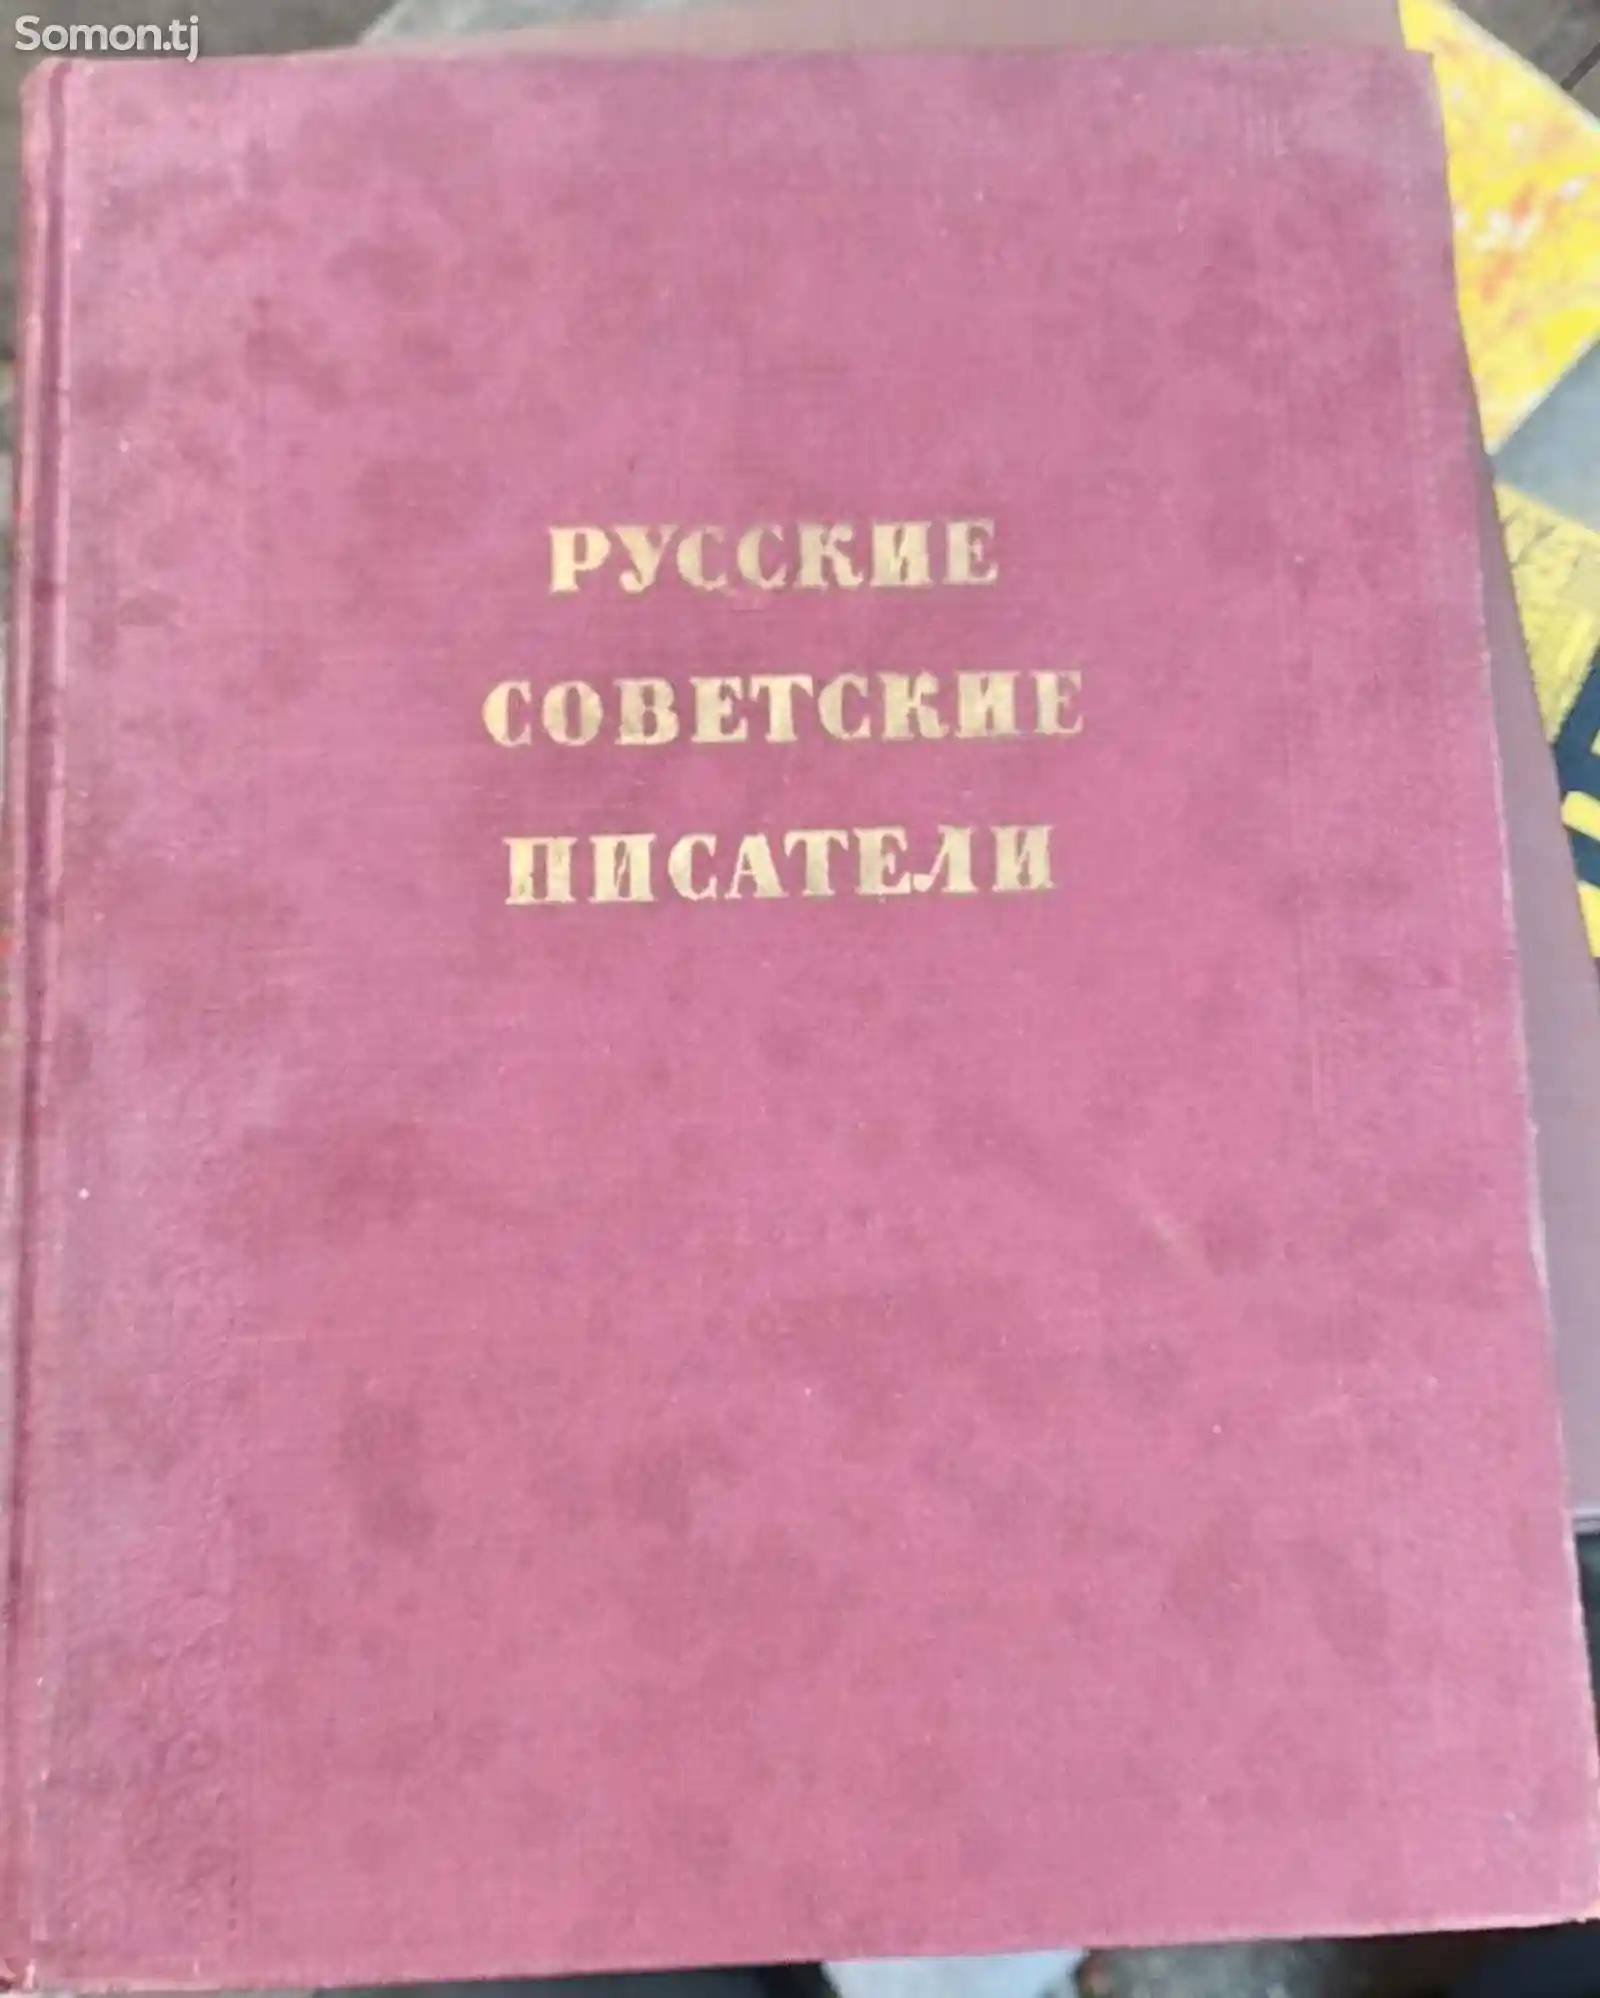 Книга Русский Советский Писатели-1